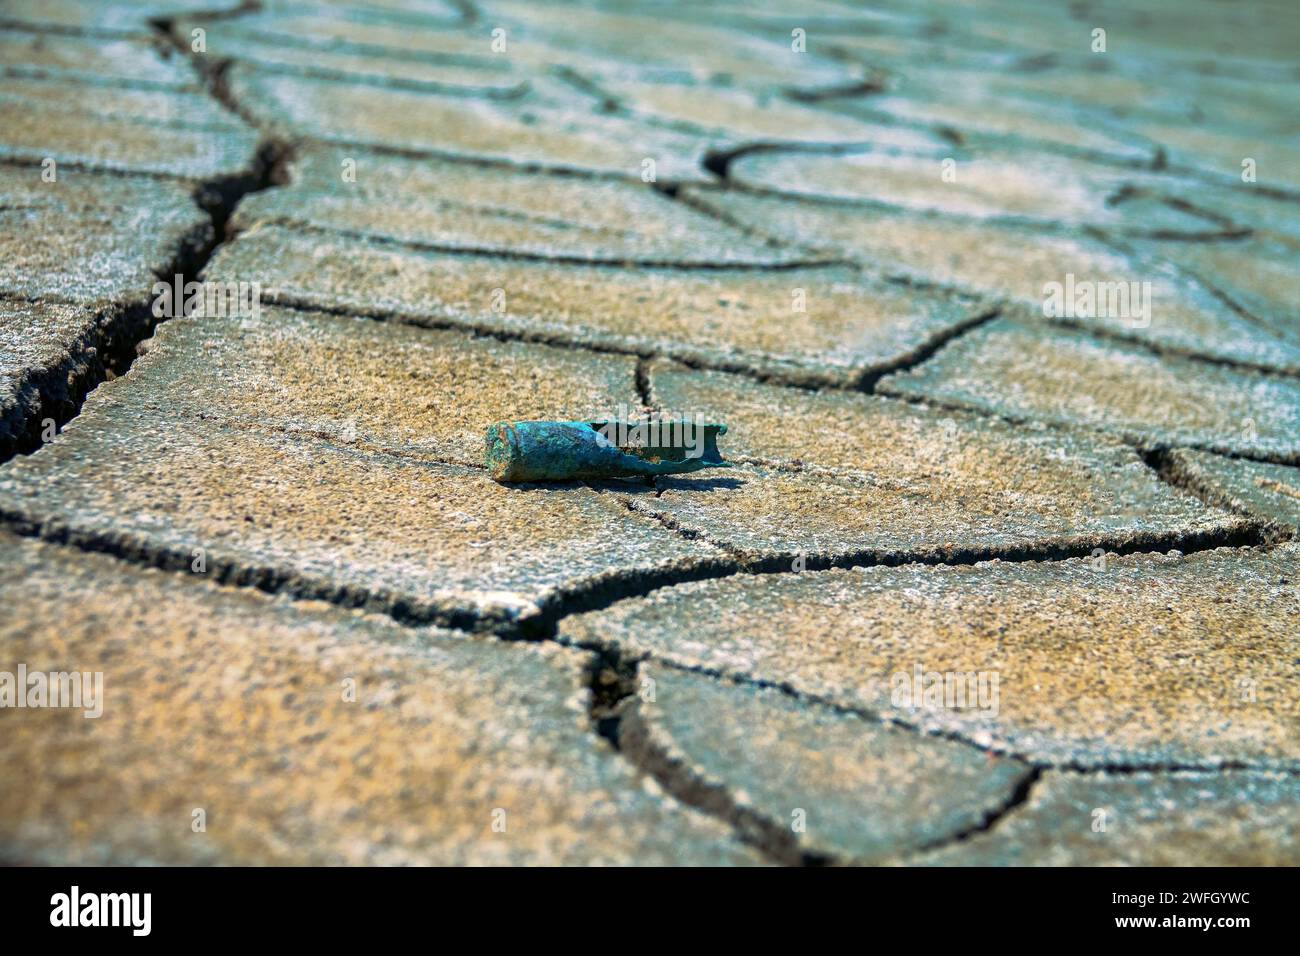 Nach dem Krieg. Deutsche Karabiner-(Gewehr-)Rostkartusche aus dem Zweiten Weltkrieg am Boden eines ausgetrockneten Stausees Stockfoto